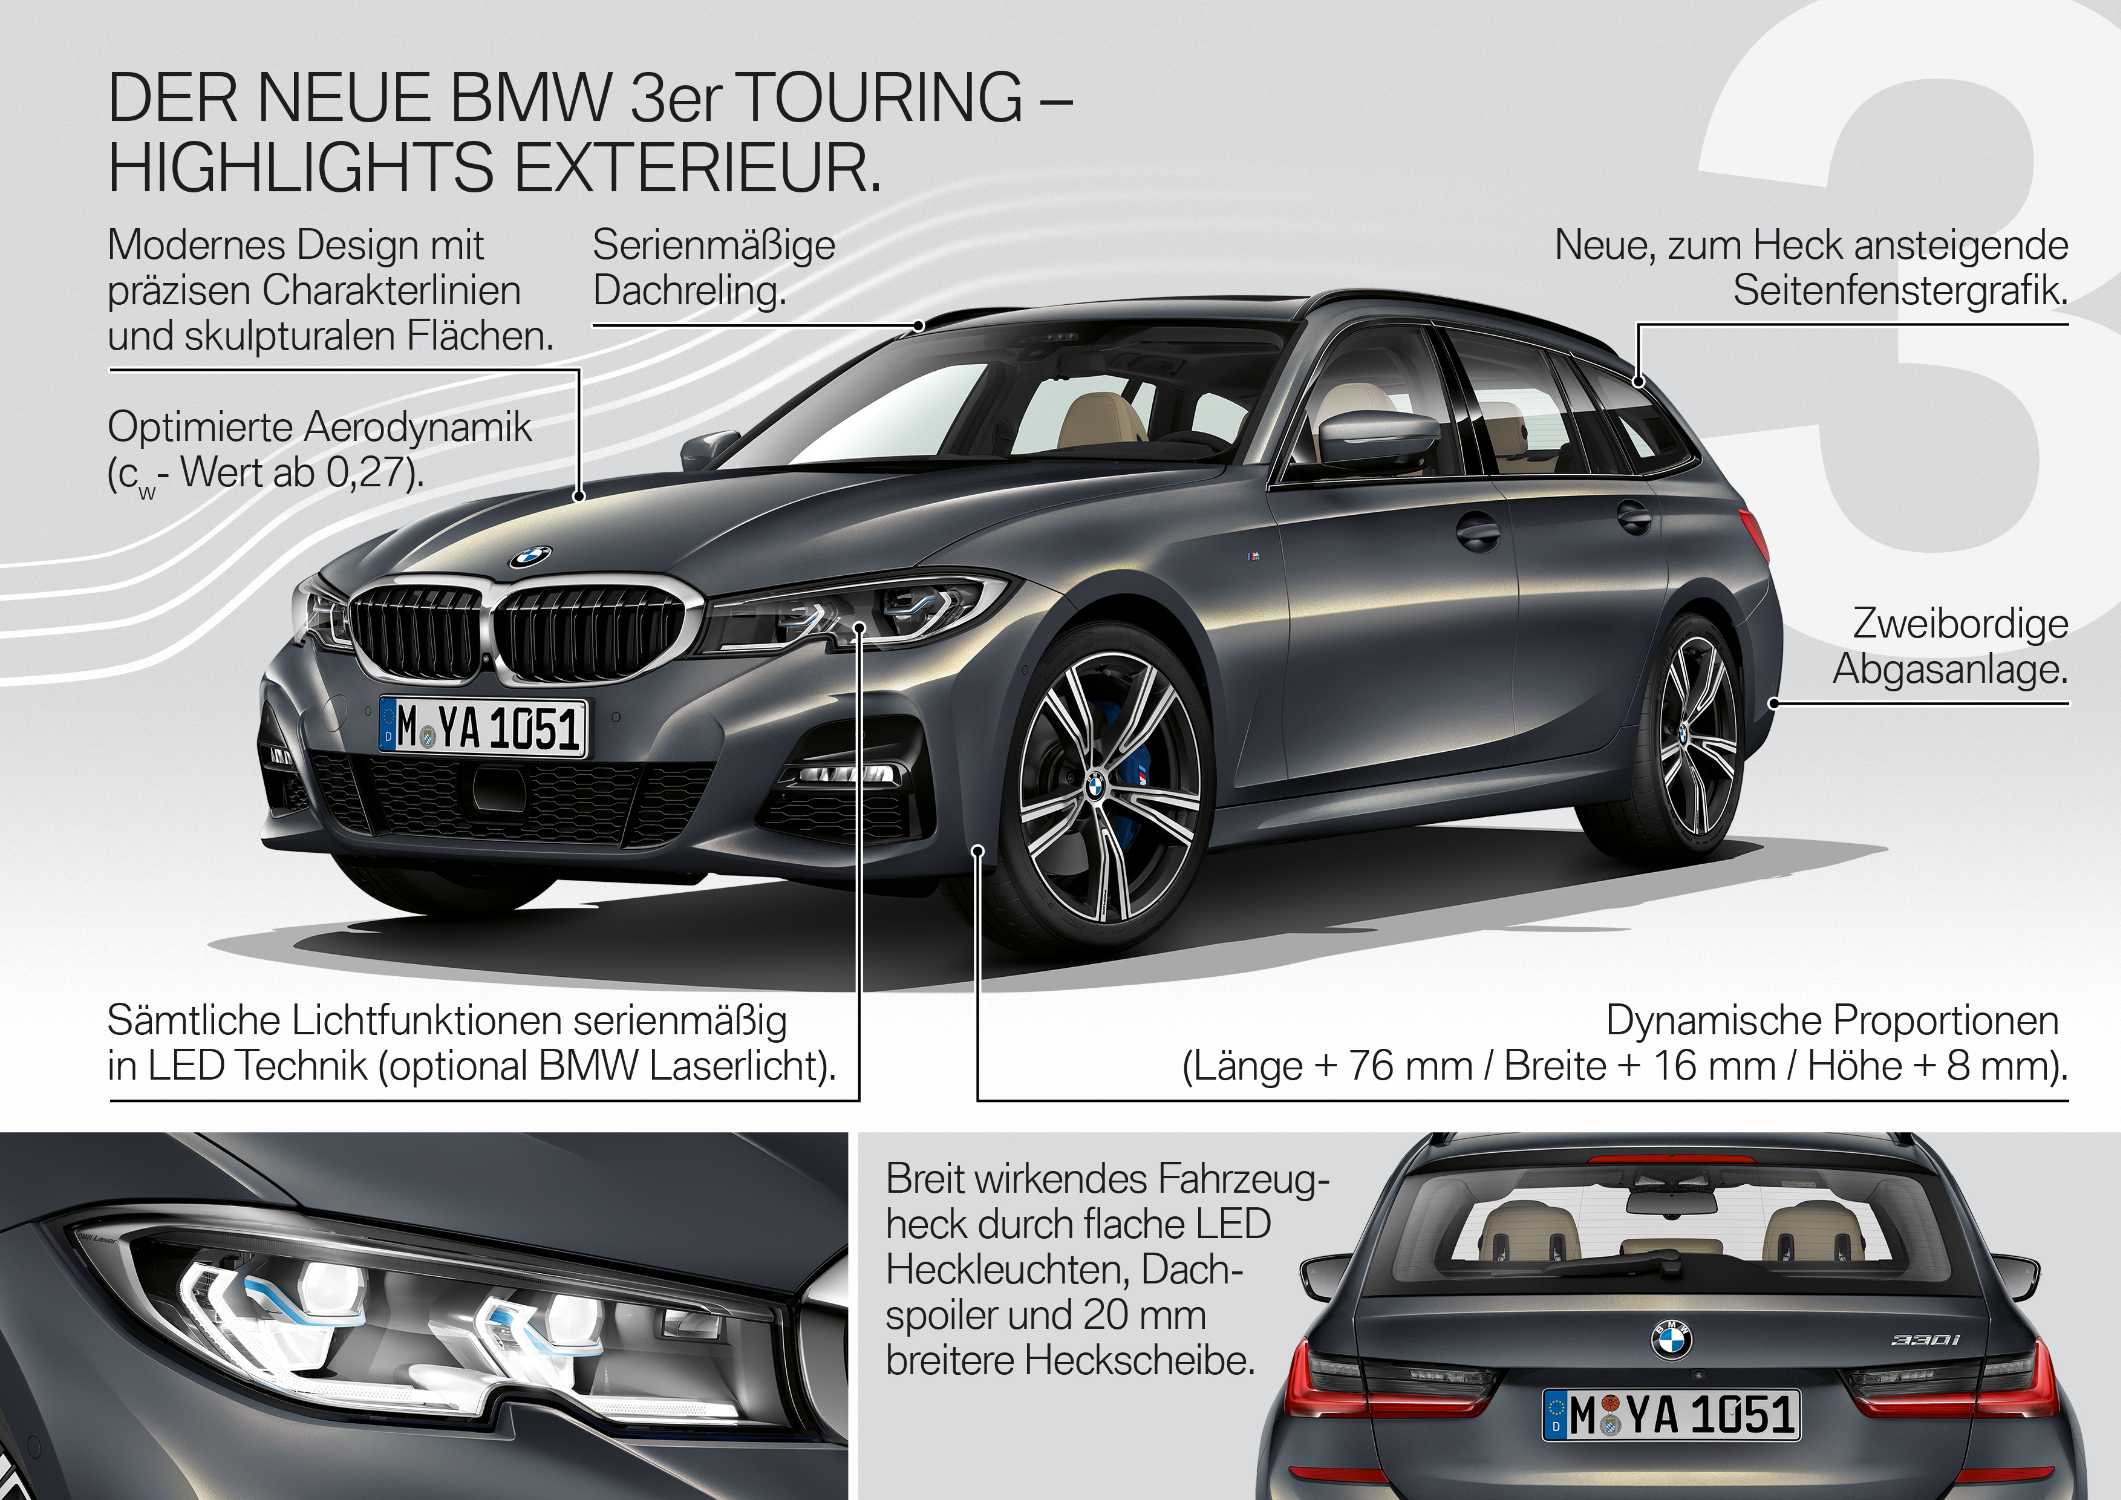 Der neue BMW 3er Touring – Produkthighlights (06/2019).